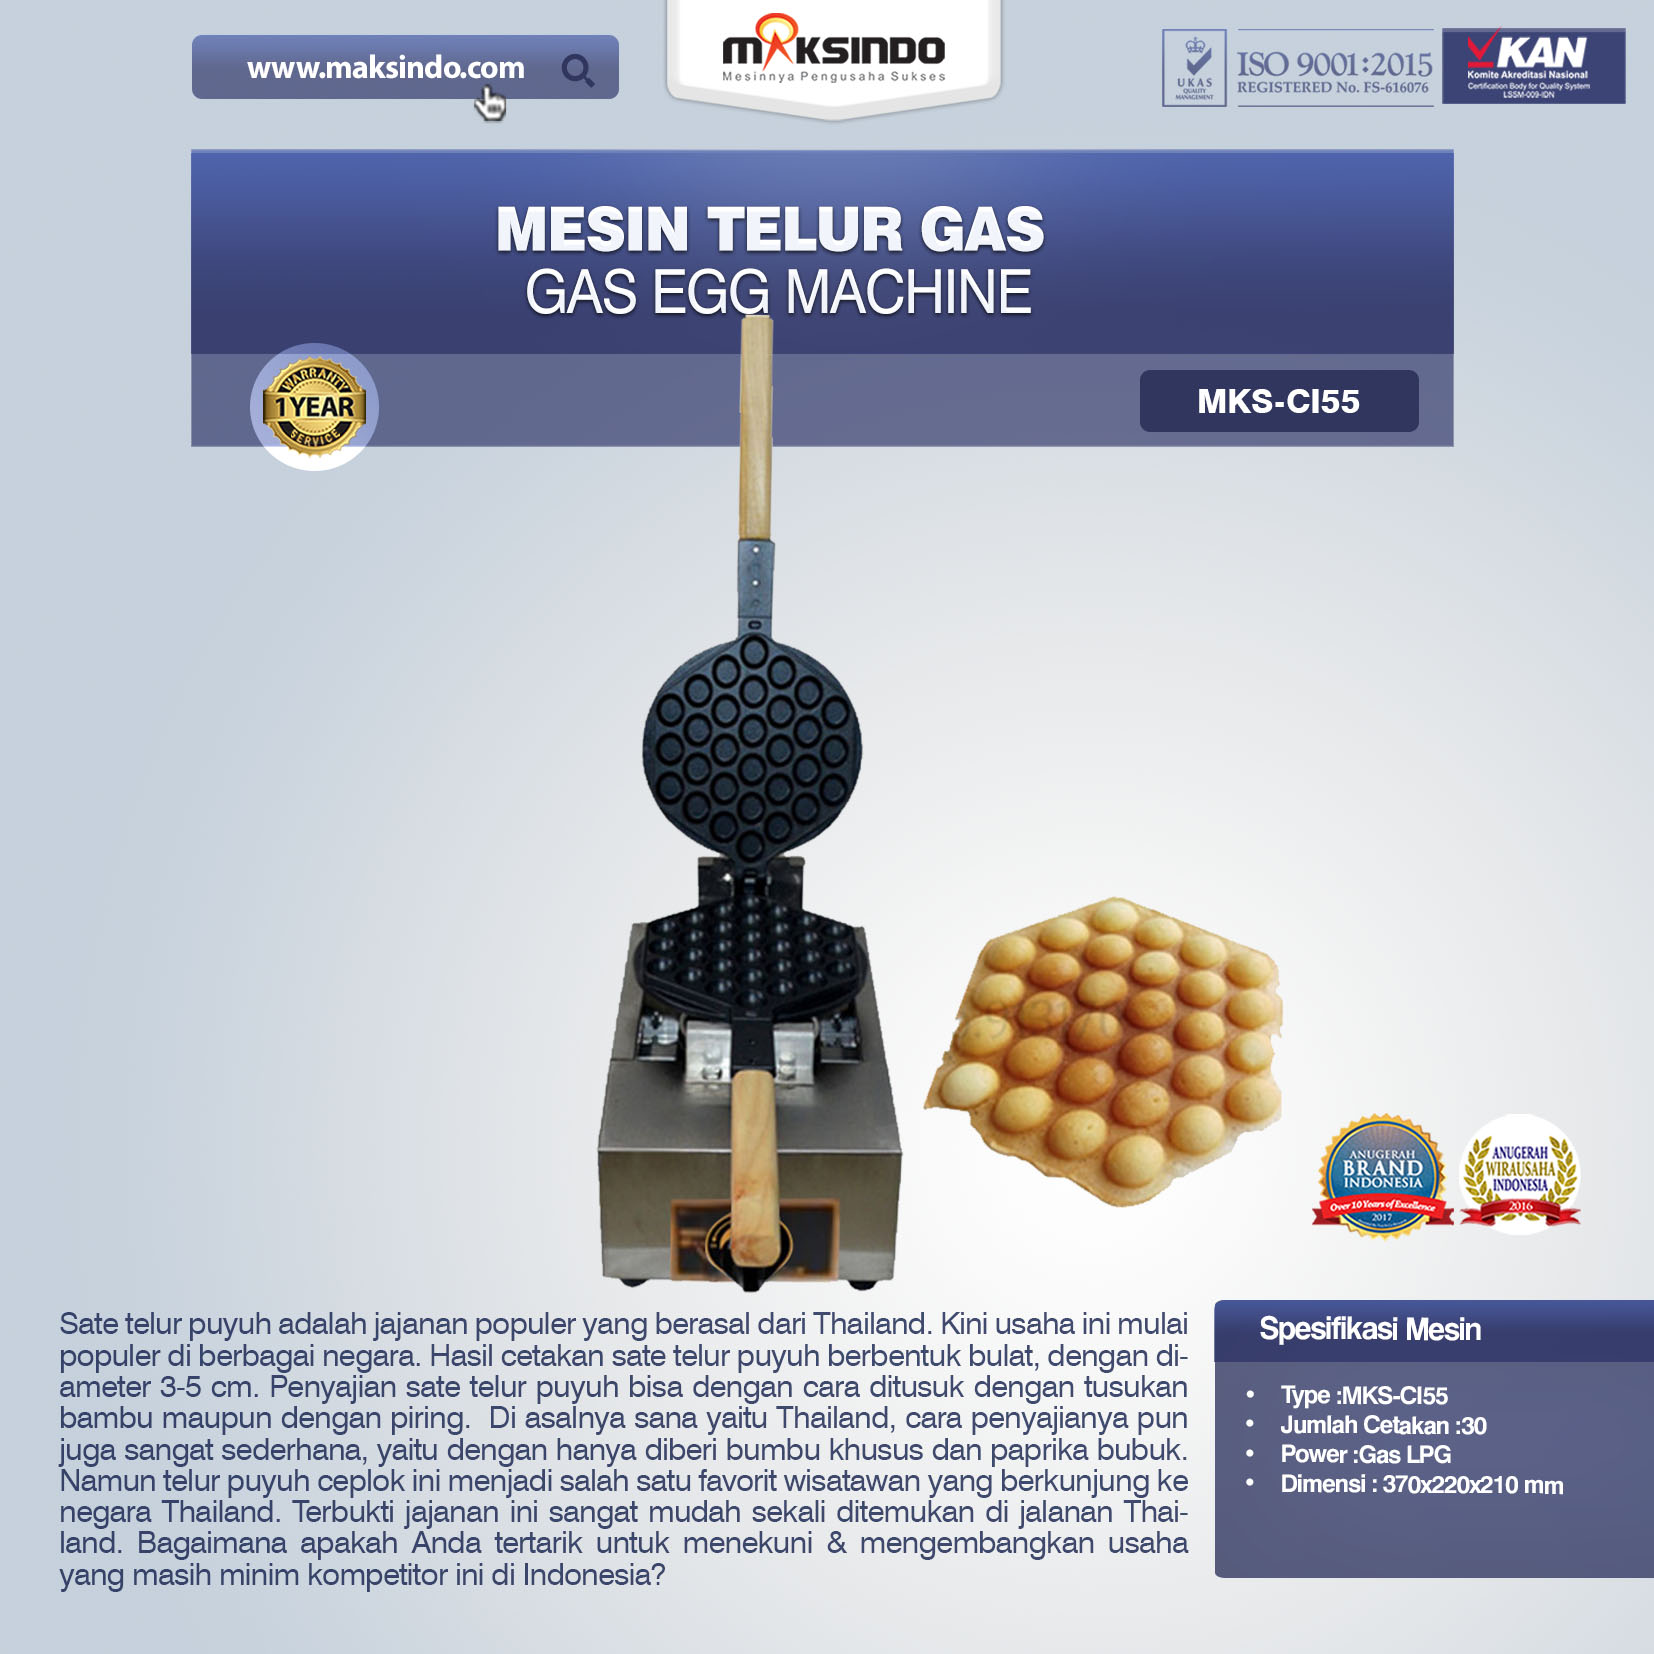 Jual Mesin Telur Gas (Gas Egg Machine) MKS-CI55 Di Pekanbaru